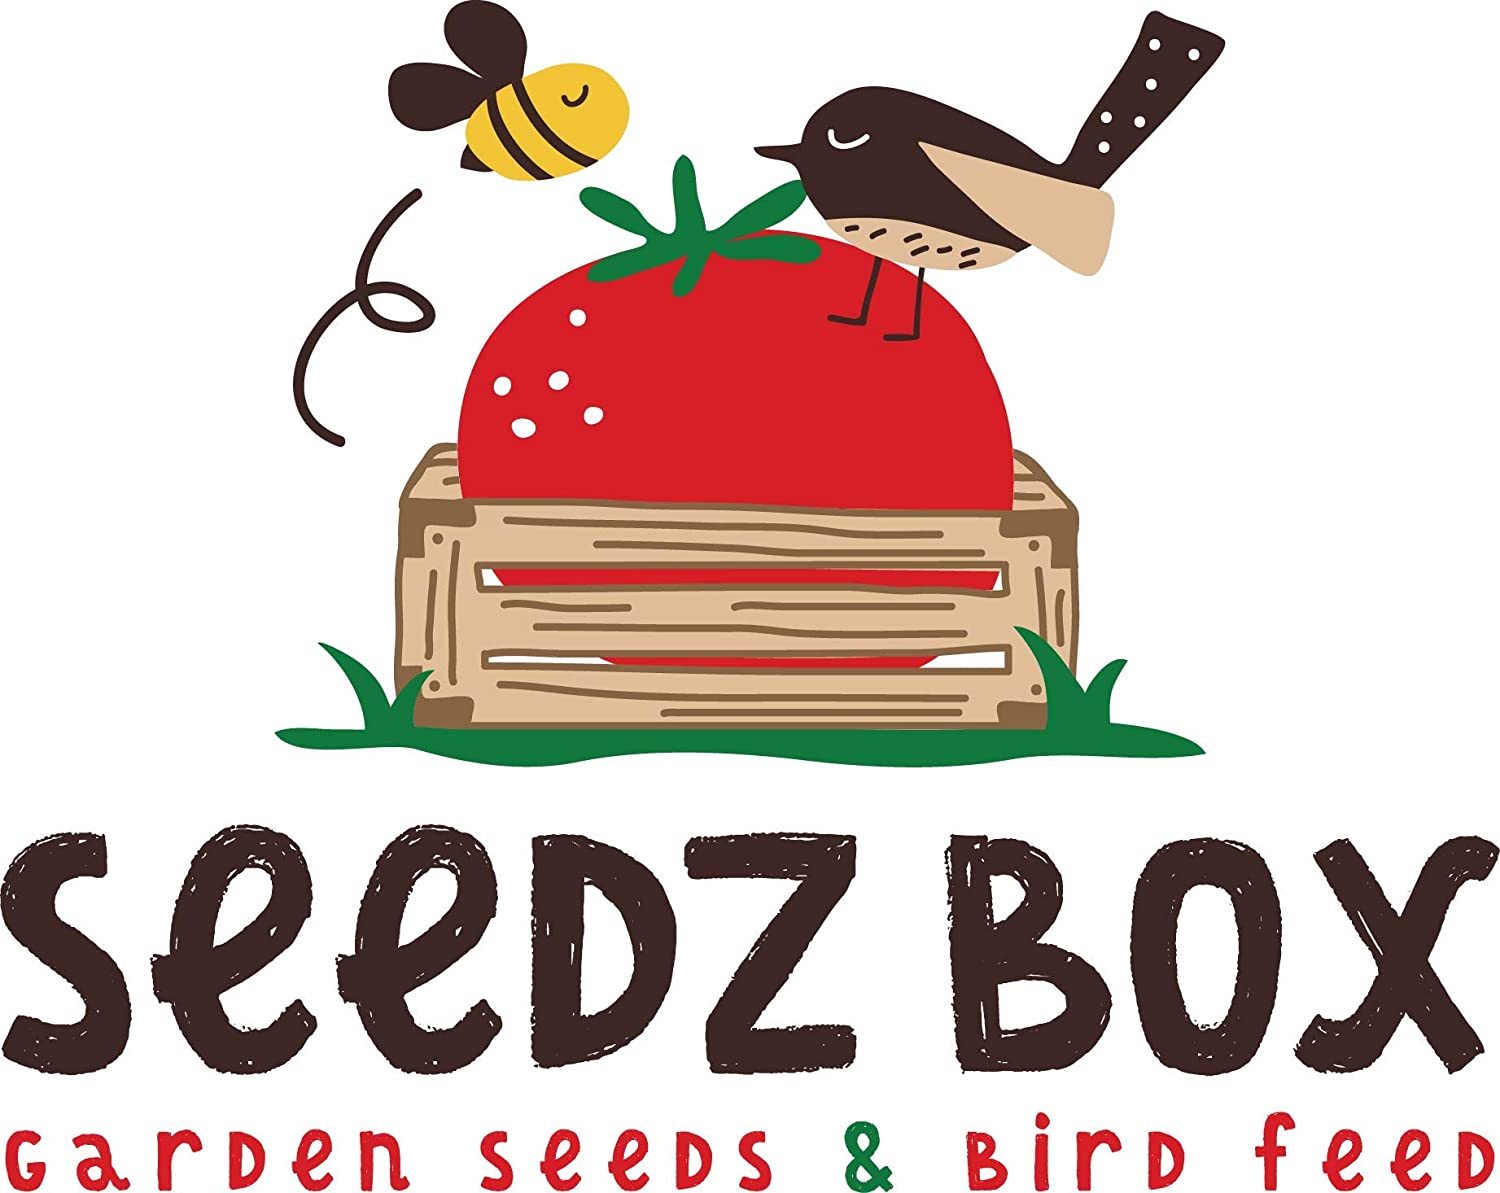  Seedzbox mezcla premium de semillas y pellets para hámsteres, jerbos y ratones. Comida para roedores, natural, sana, completa –pipas, cacahuetes, maíz, guisantes, cebada, con vitamina C. Bolsa 1kg 